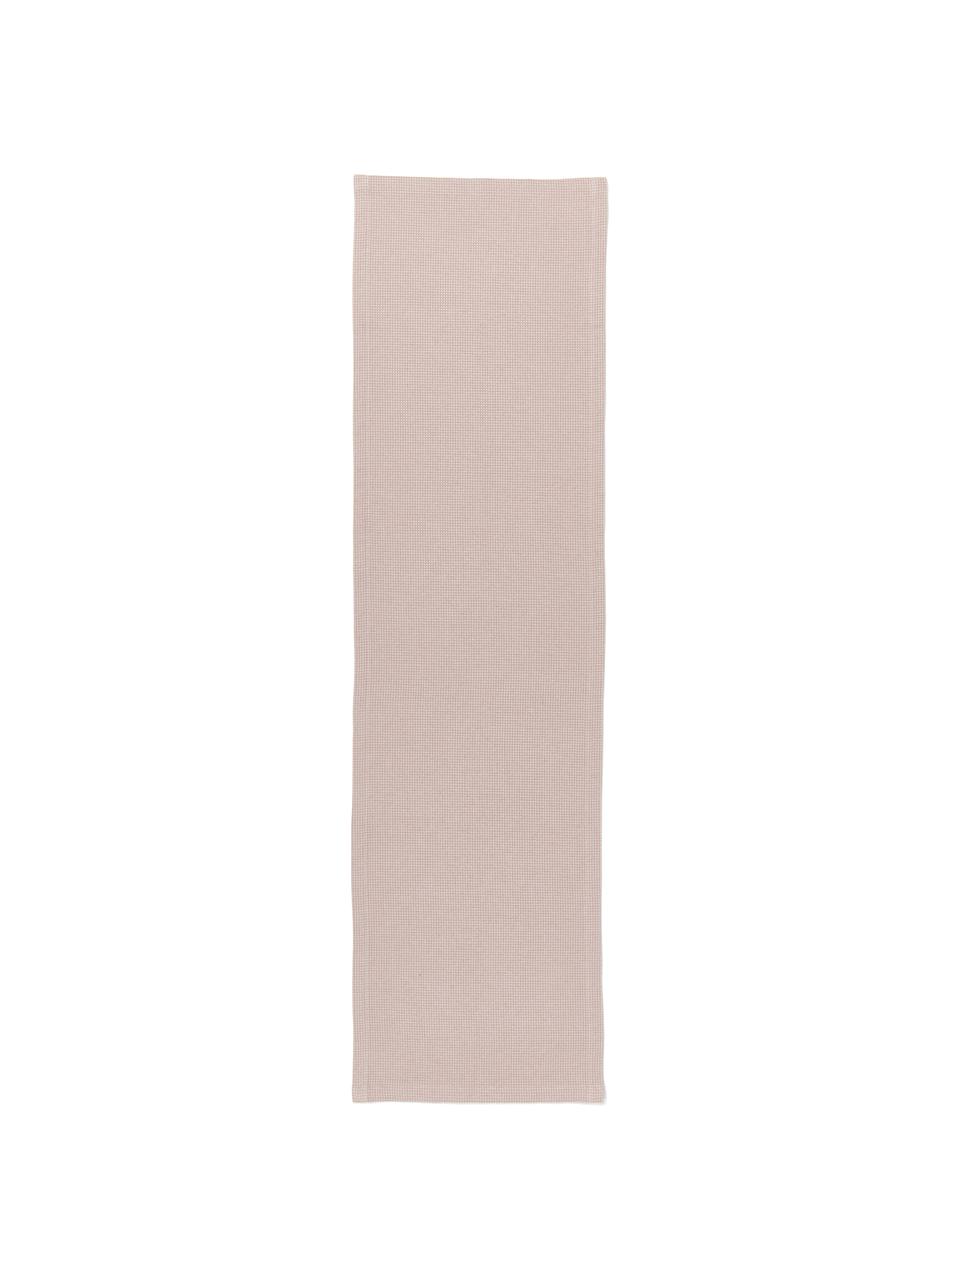 Waffelpiqué-Tischläufer Kubo in Rosa, 65% Baumwolle, 35% Polyester, Altrosa, 40 x 145 cm